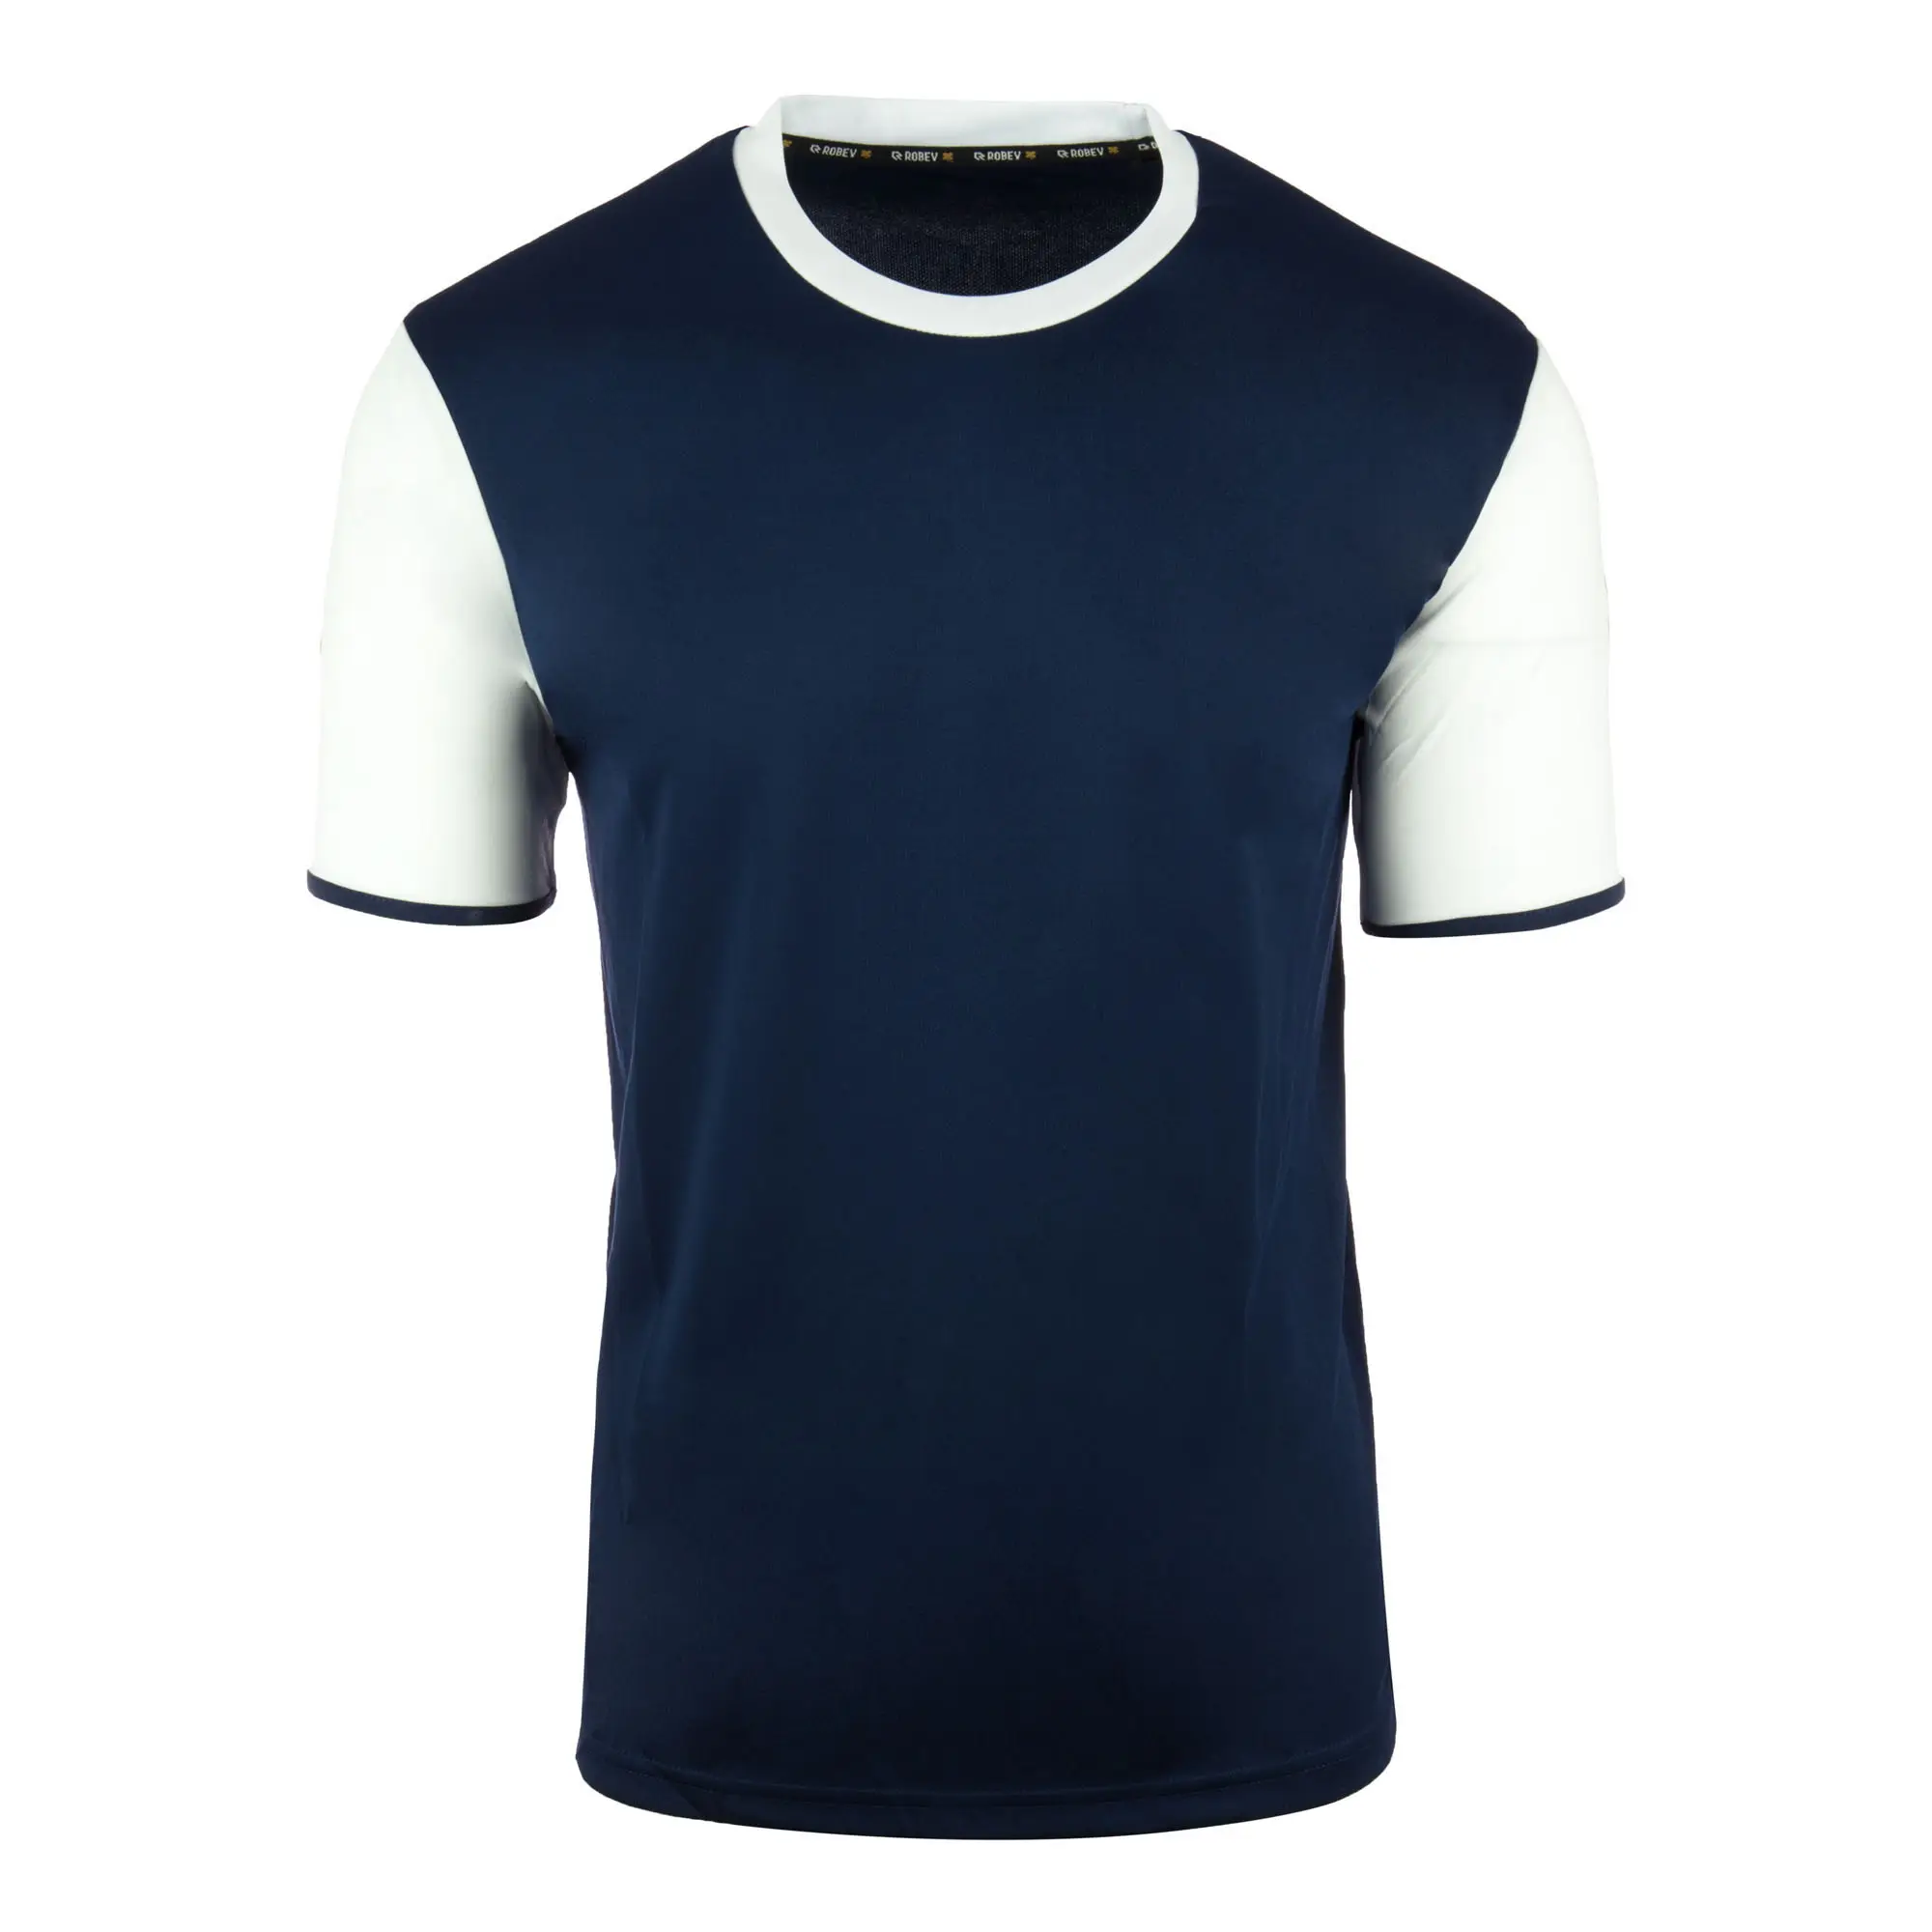 T-shirt de football ons chinois, maillot d'équipe, uniforme bon marché, vente en gros,